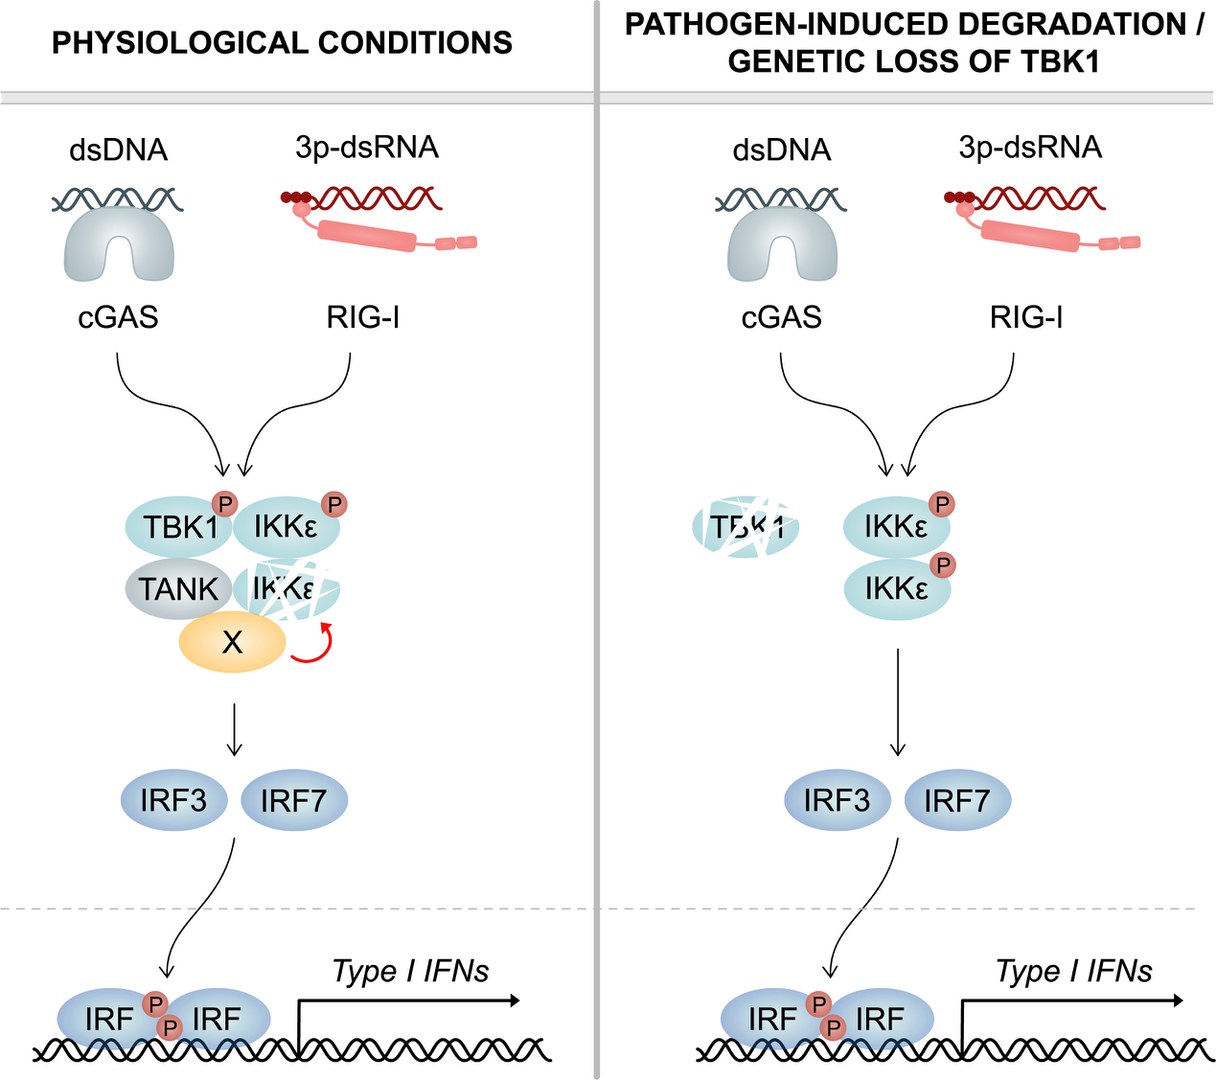 Links: Unter physiologischen Bedingungen induziert TBK1 kontinuierlich den Abbau seiner verwandten Kinase IKKepsilon. Dazu rekrutiert TBK1 über sein Gerüstprotein TANK einen noch nicht identifizierten Co-Faktor (X), der IKKepsilon destabilisiert. Bei einer Infektion tragen sowohl TBK1 als auch IKKepsilon zur Produktion von Interferon (Typ-I-IFN) bei. Rechts: Bei pathogen-induziertem Abbau oder genetischem Verlust von TBK1 ist die IKKepsilon-Proteinstabilität nicht mehr reduziert und somit der IKKepsilon-Proteinspiegel stark erhöht. Erhöhte Mengen an IKKepsilon-Protein können den Mangel an TBK1 ausgleichen. Dies gewährleistet eine ungebremste Typ-I-IFN-Antwort und eine effiziente Beseitigung von Infektionen.